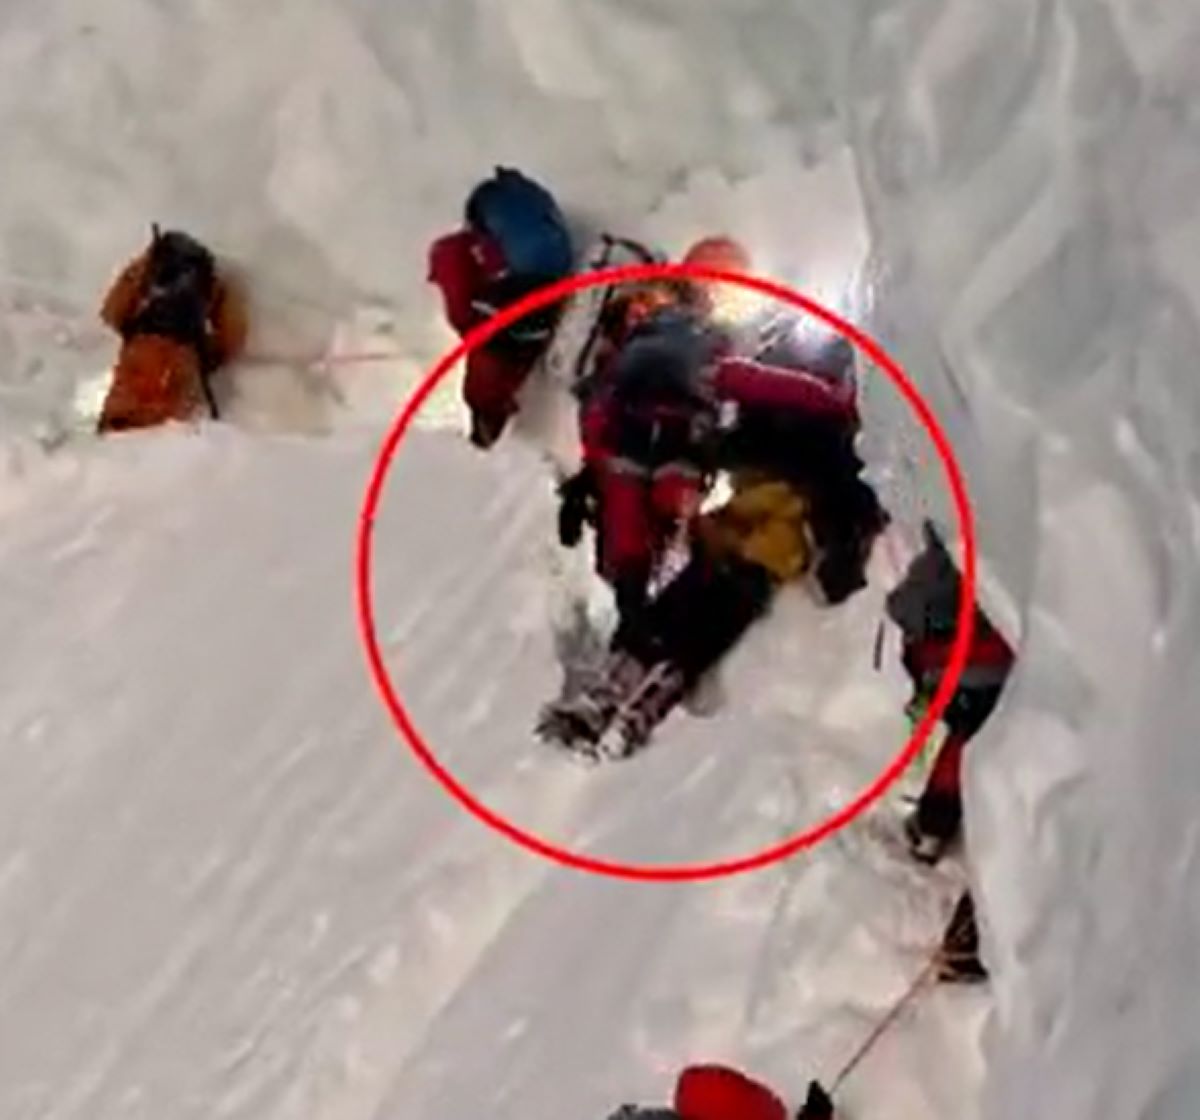  alpinista-morre-montanha-abandonado 